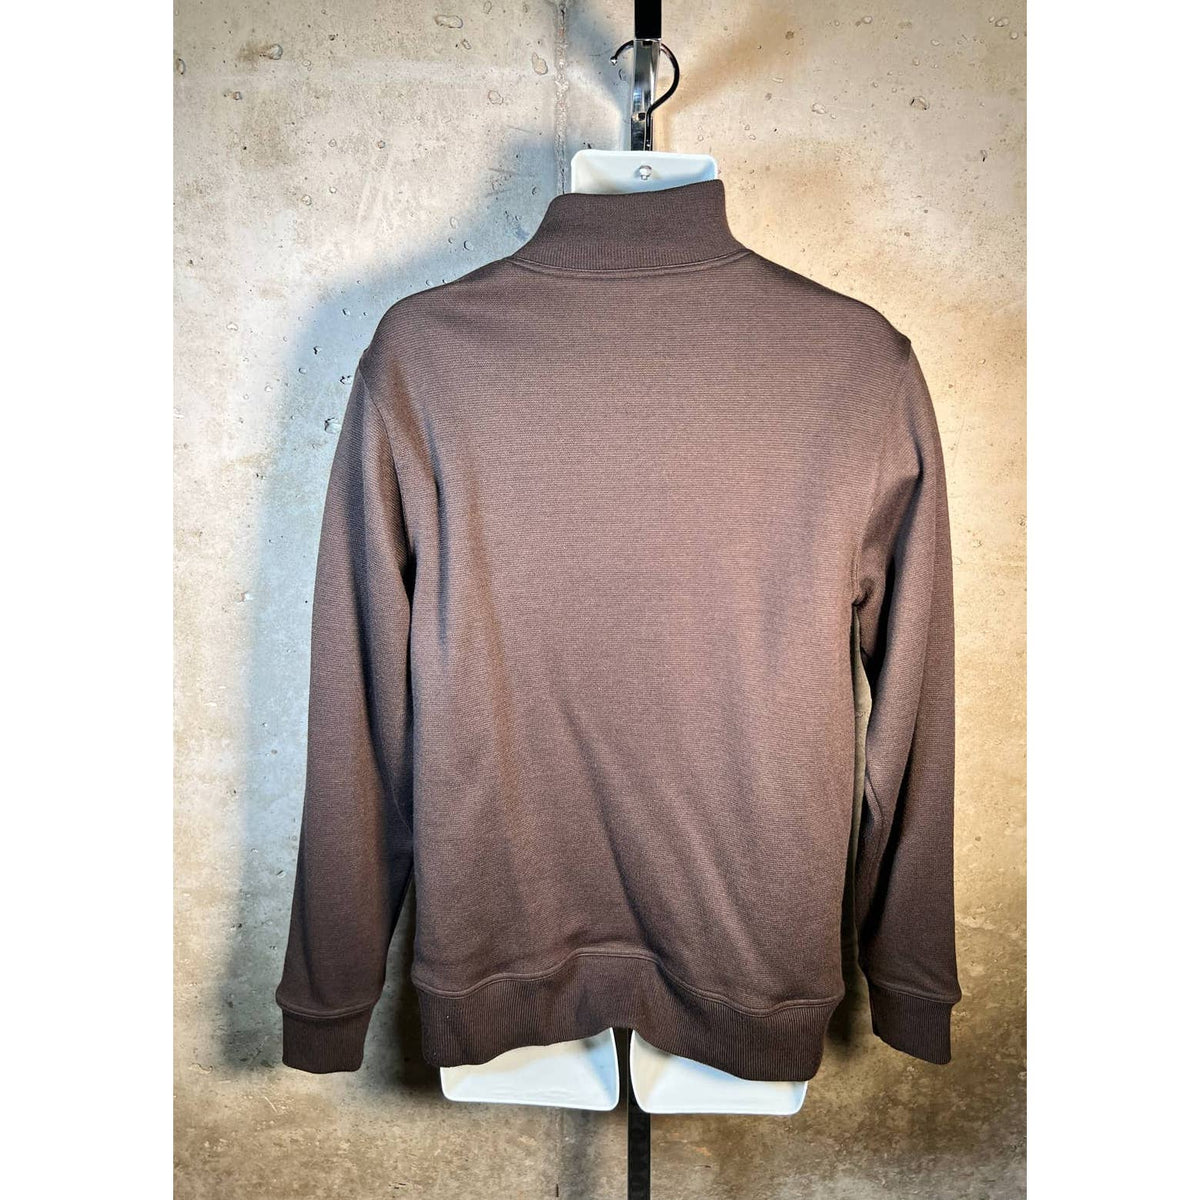 Lasken Brown Wool Sporting 1/2 Zip Sweater w/ Suede Sz. Medium